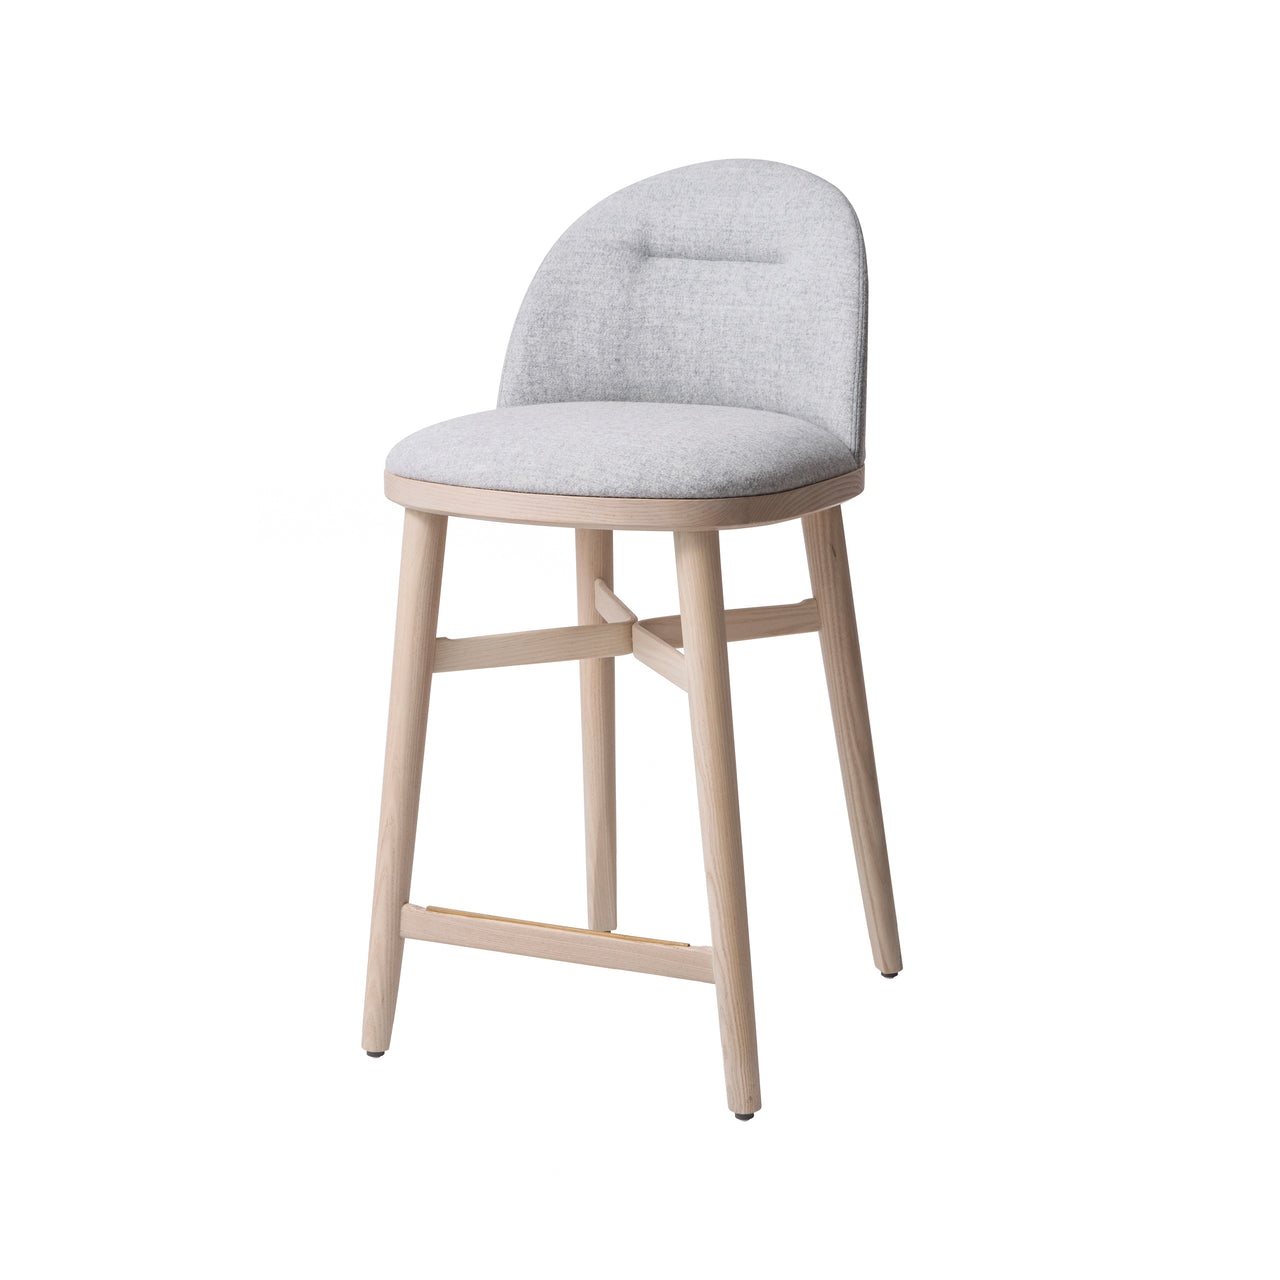 Bund Bar + Counter Chair: Counter + Natural Oak